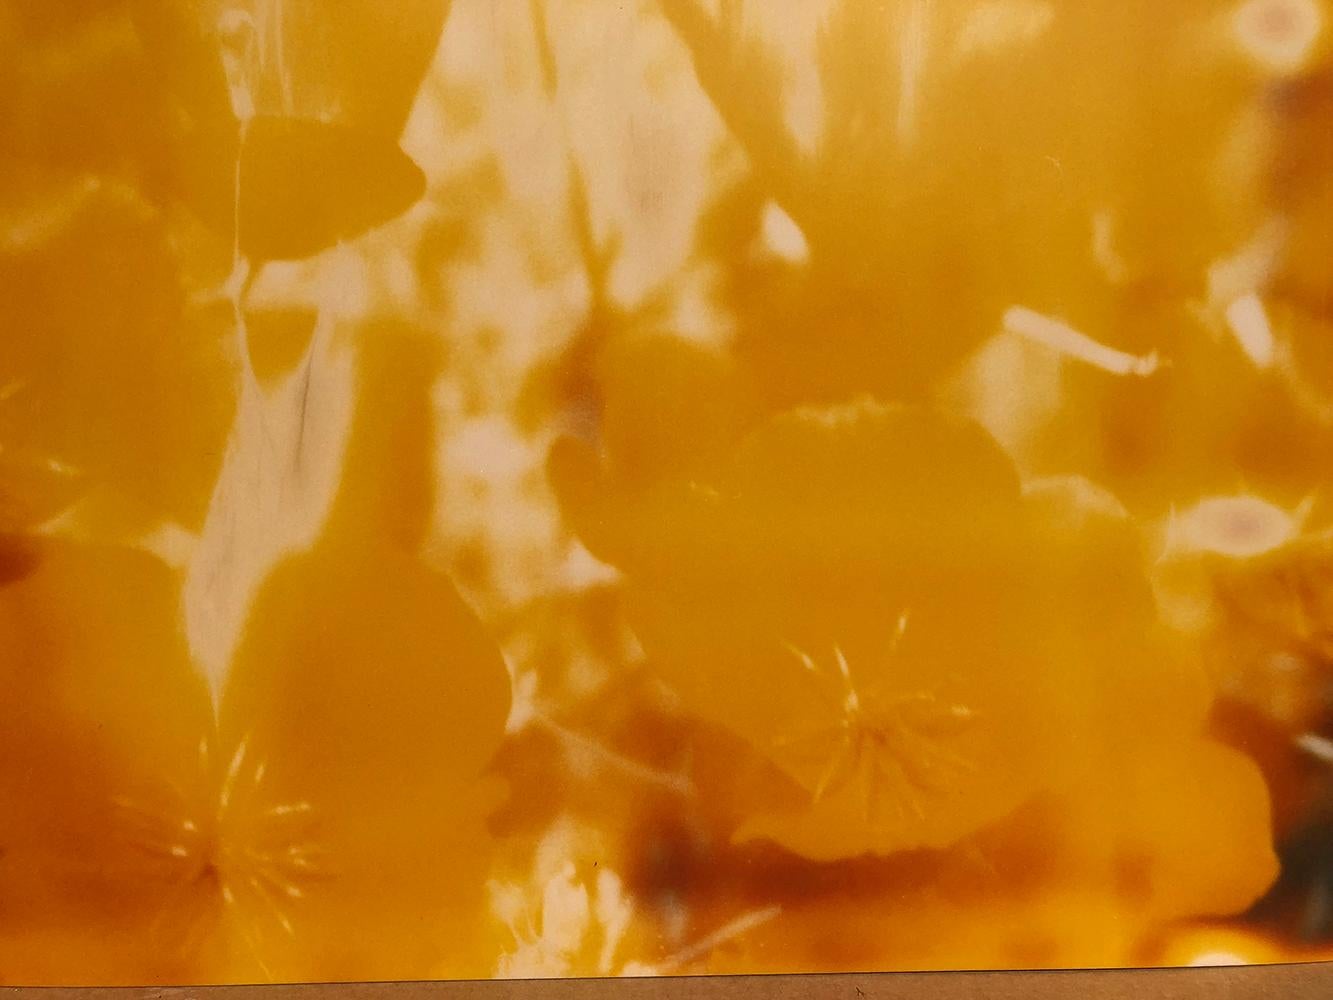 Yellow Flower (The Last Picture Show) - 2005

128x125cm, 
Edition de 5, 
A.I.C. C-Print analogique, d'après un Polaroïd,
imprimé à la main par l'artiste sur papier Fuji Crystal Archive. (mat)  
Inventaire des artistes 672. 
Non monté.

